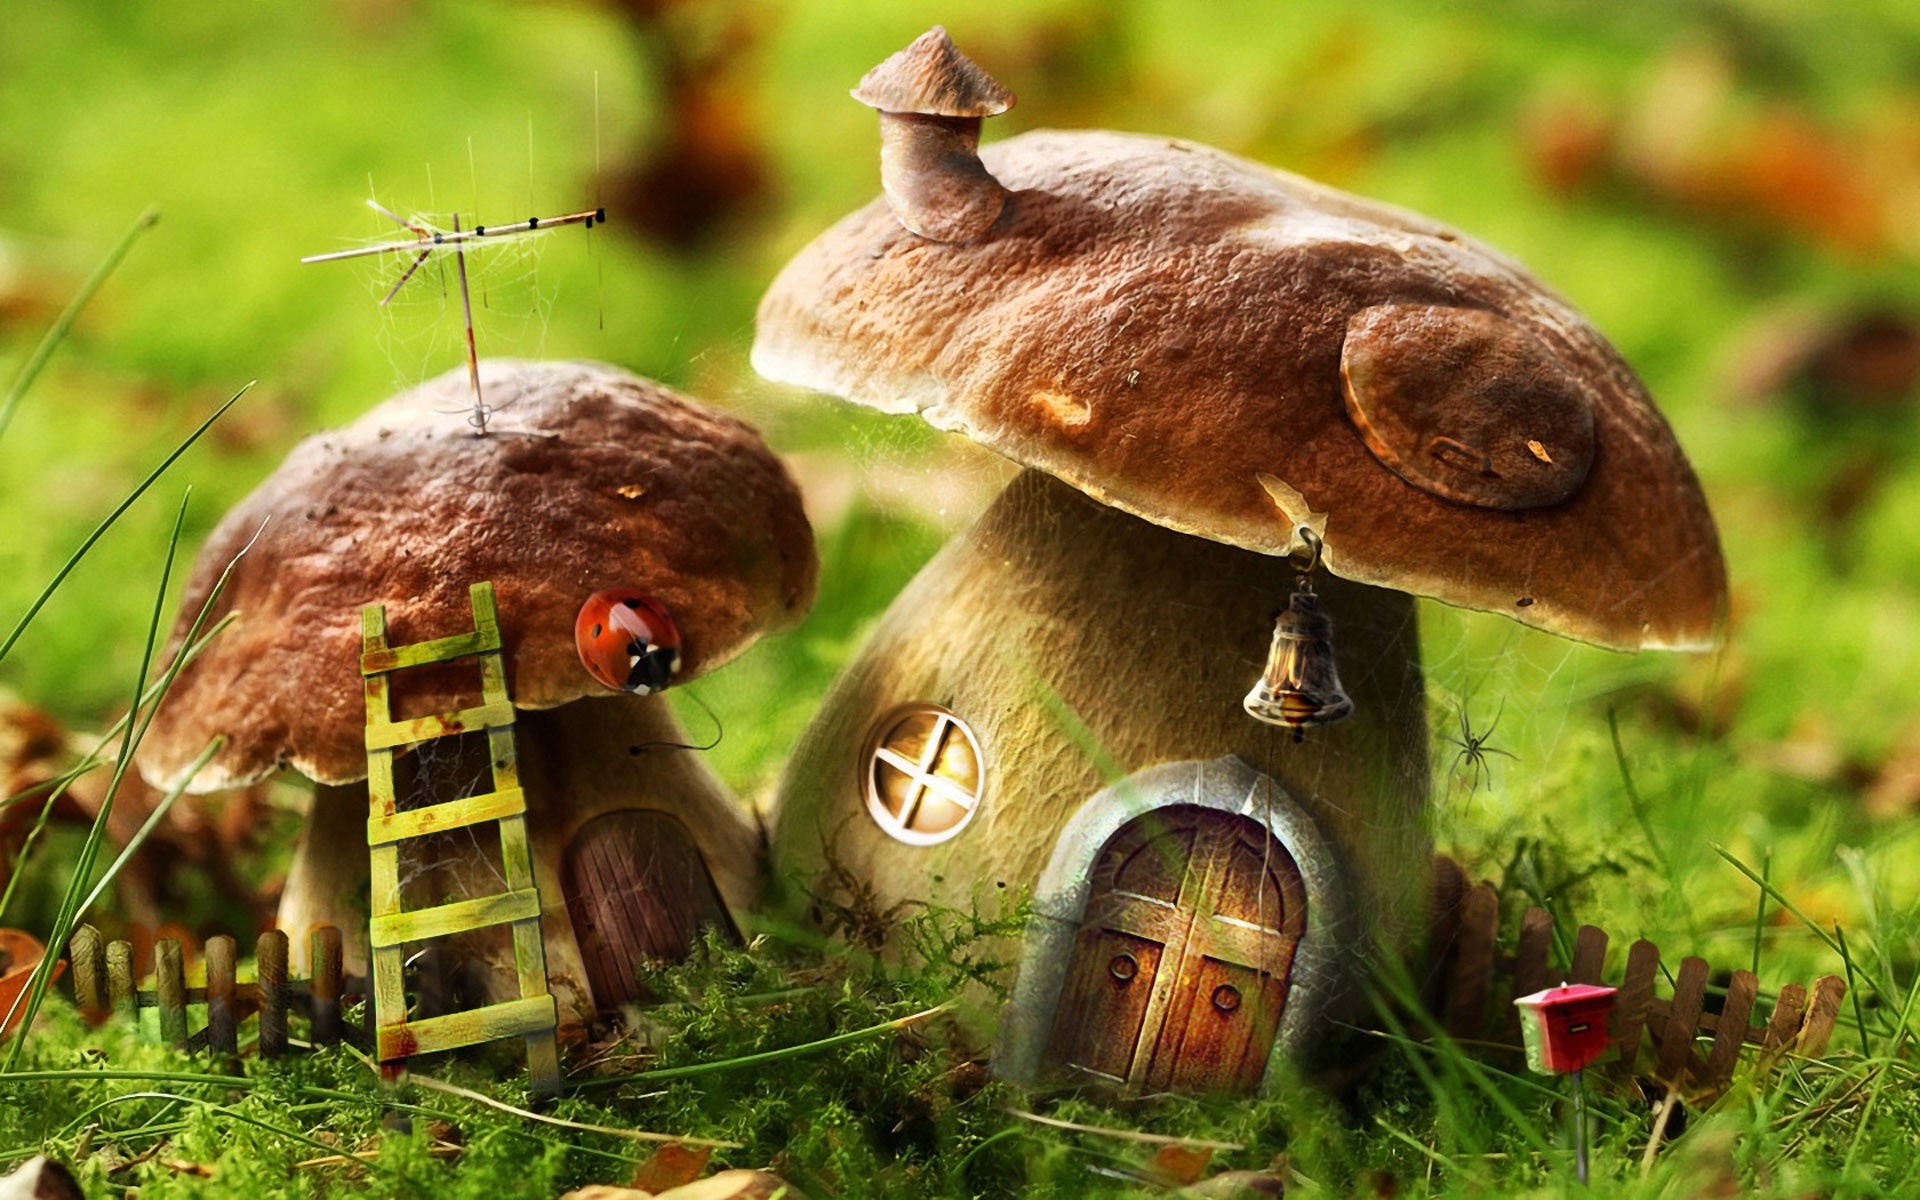 mushroom, House, Nature, Digital Art Wallpapers HD / Desktop and Mobile